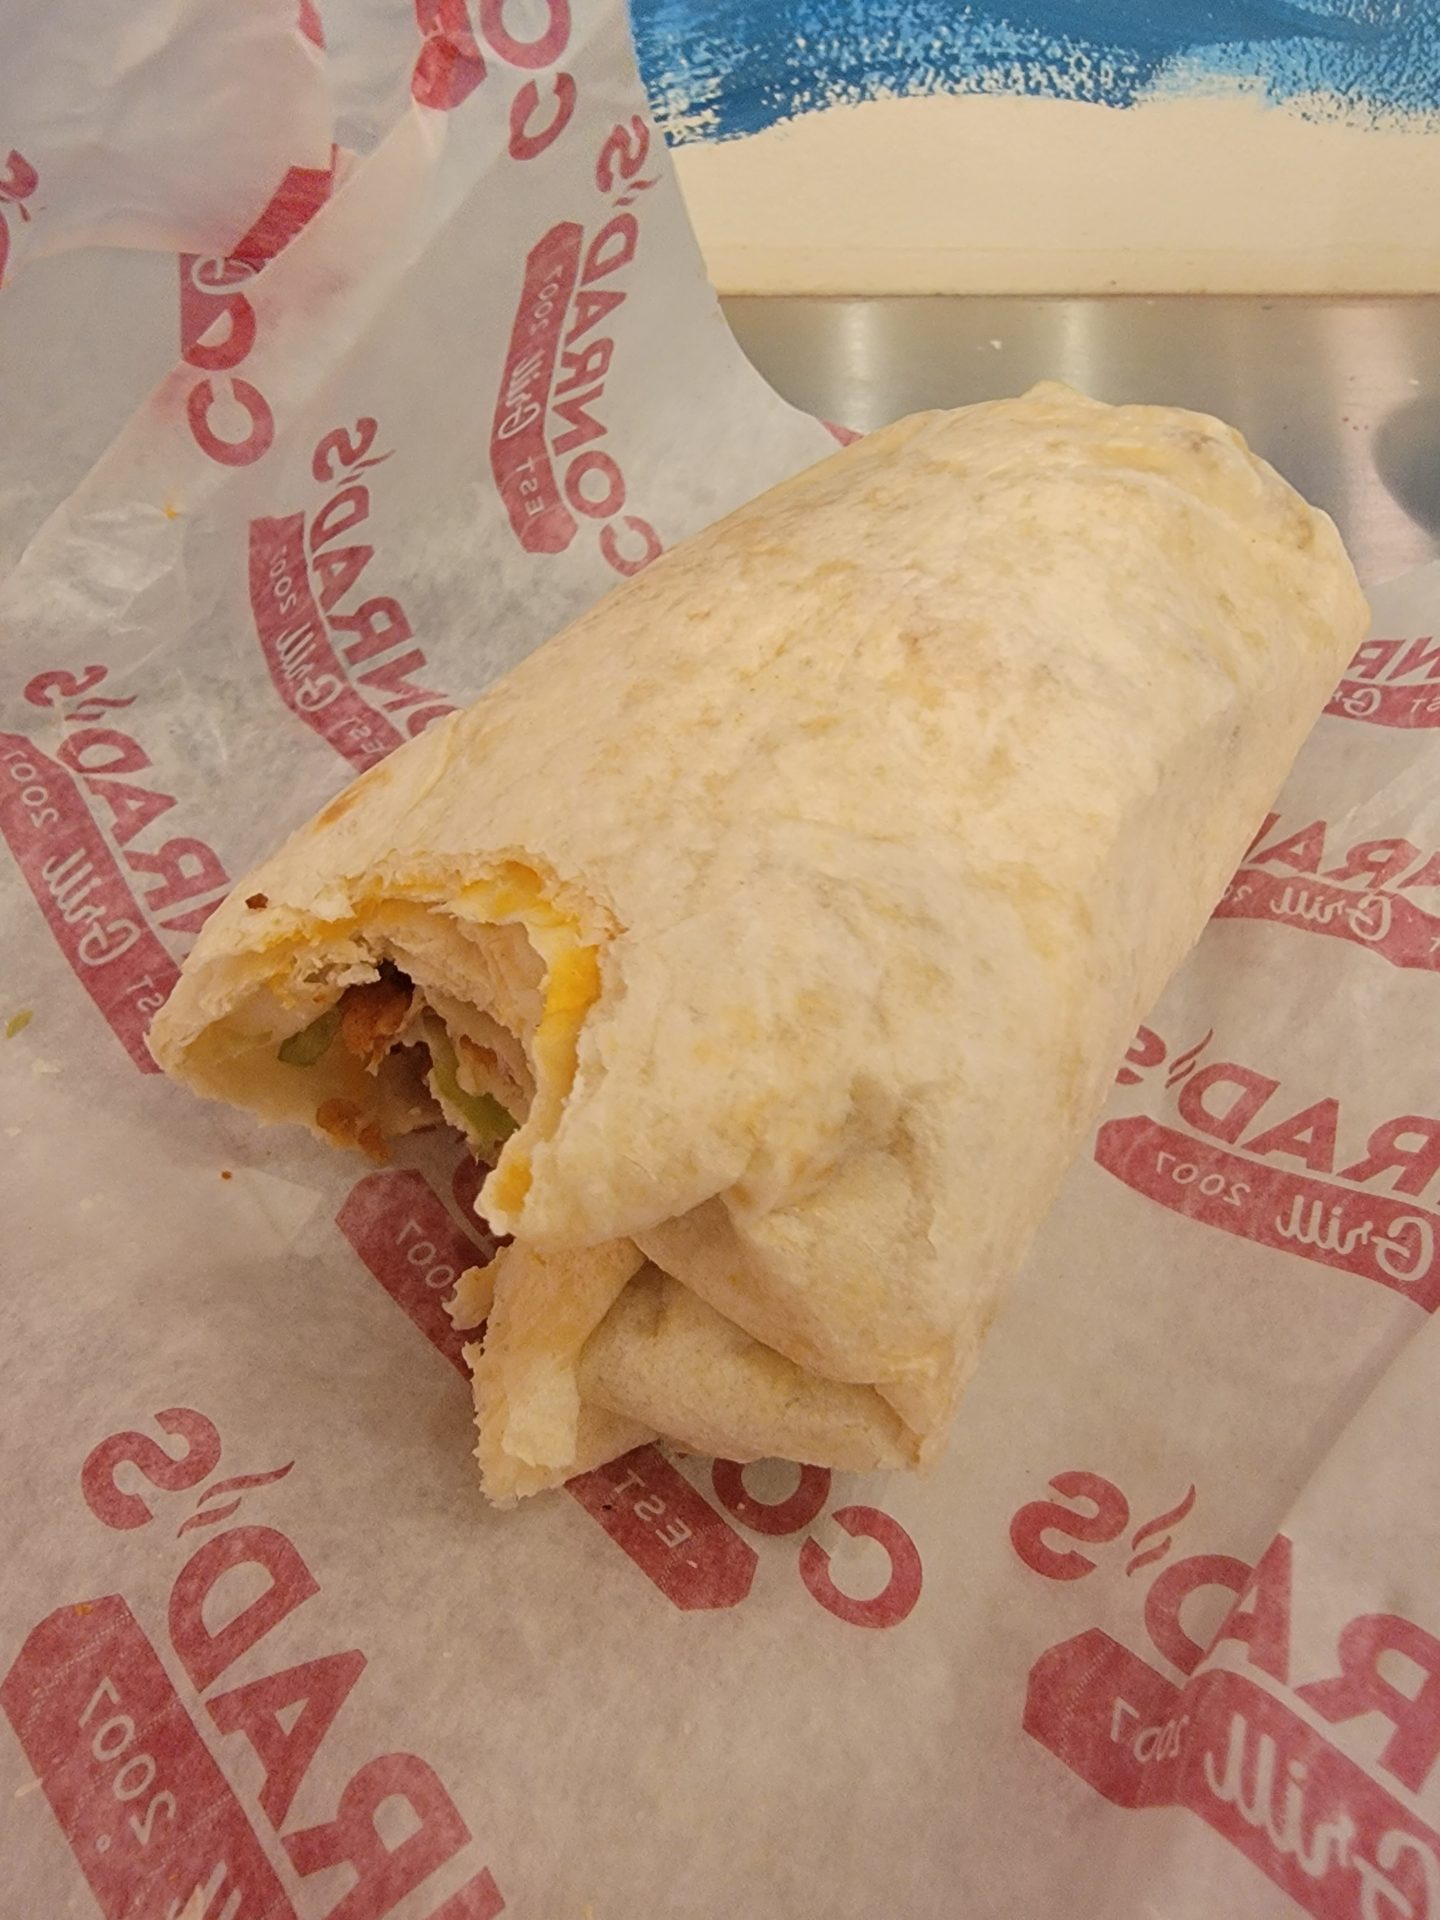 a burrito on a paper wrapper